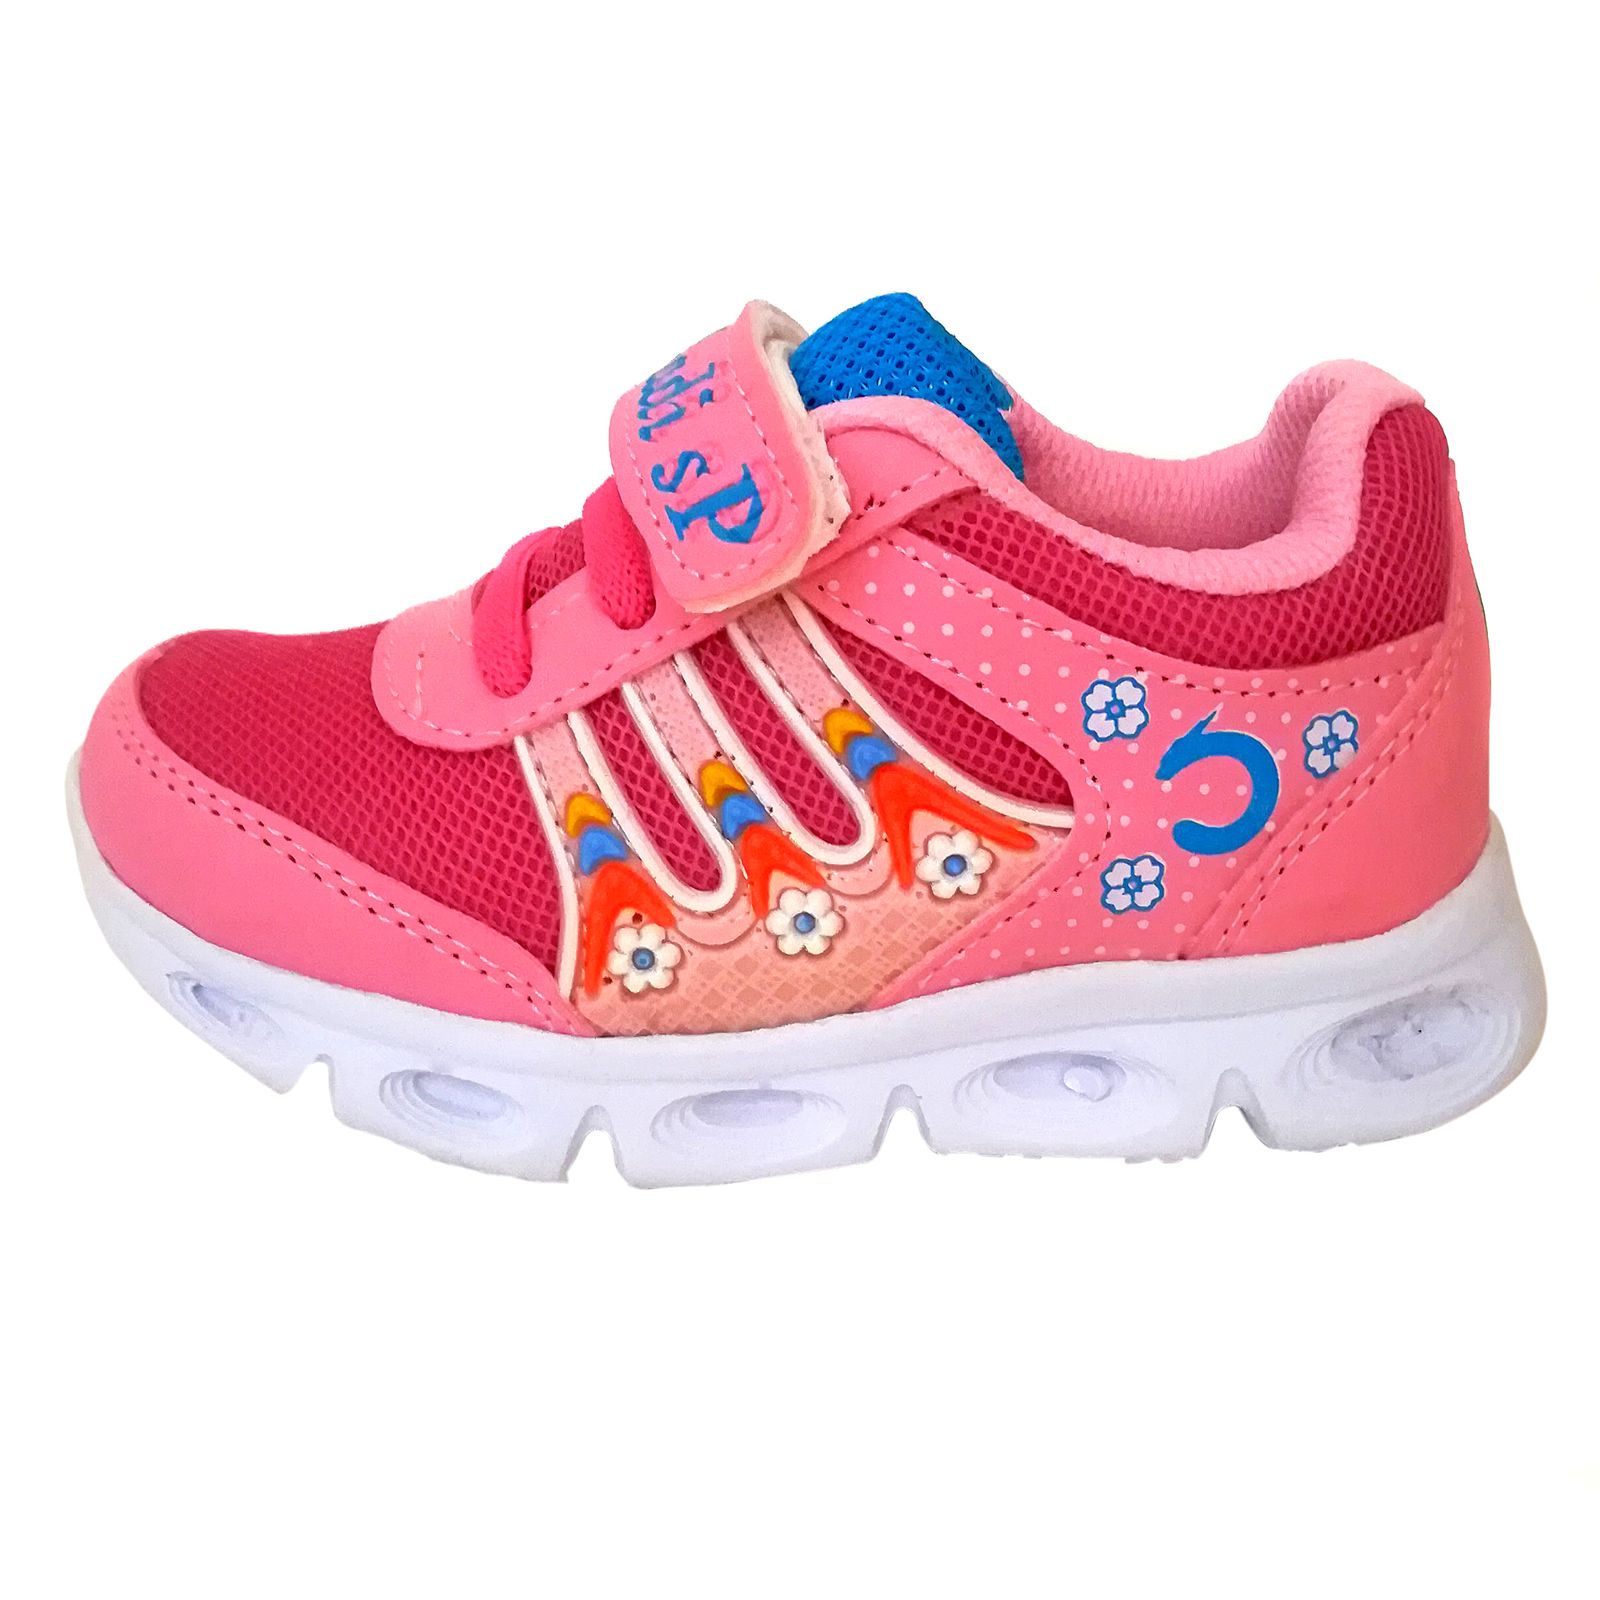  کفش مخصوص پیاده روی دخترانه مدل شادی کد 01org -  - 1